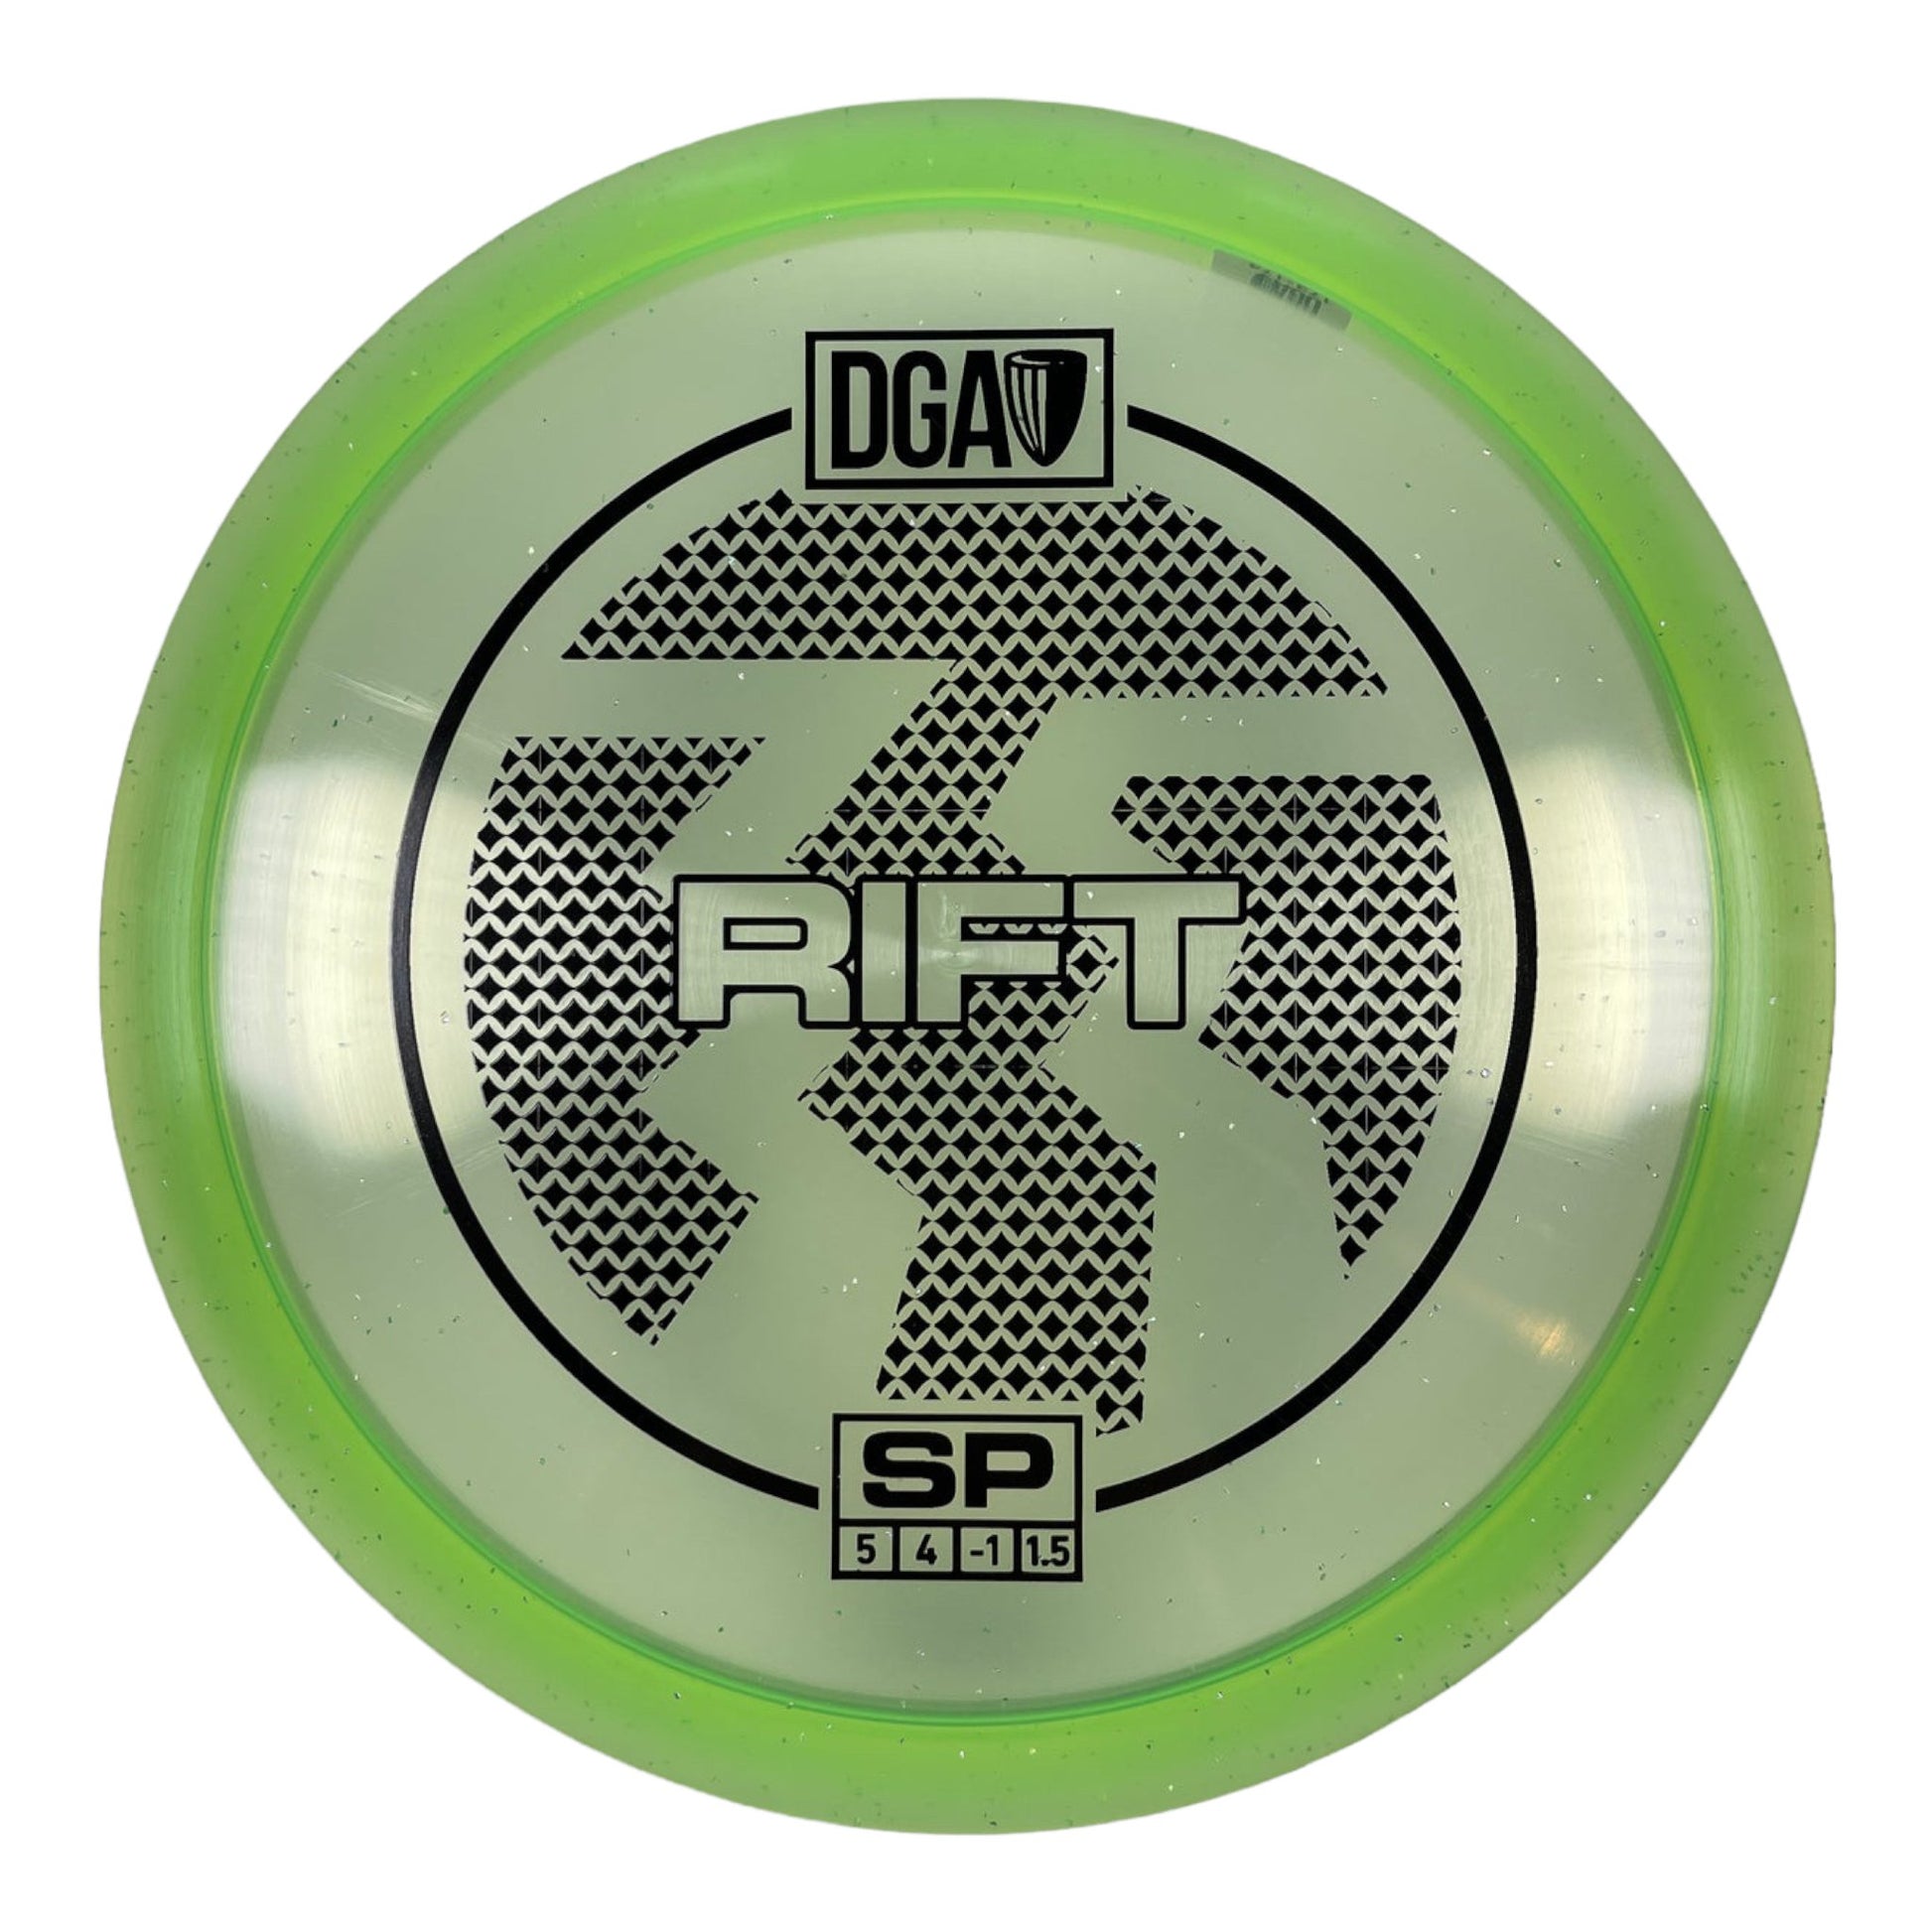 DGA Rift | SP | Green/Black 174g Disc Golf